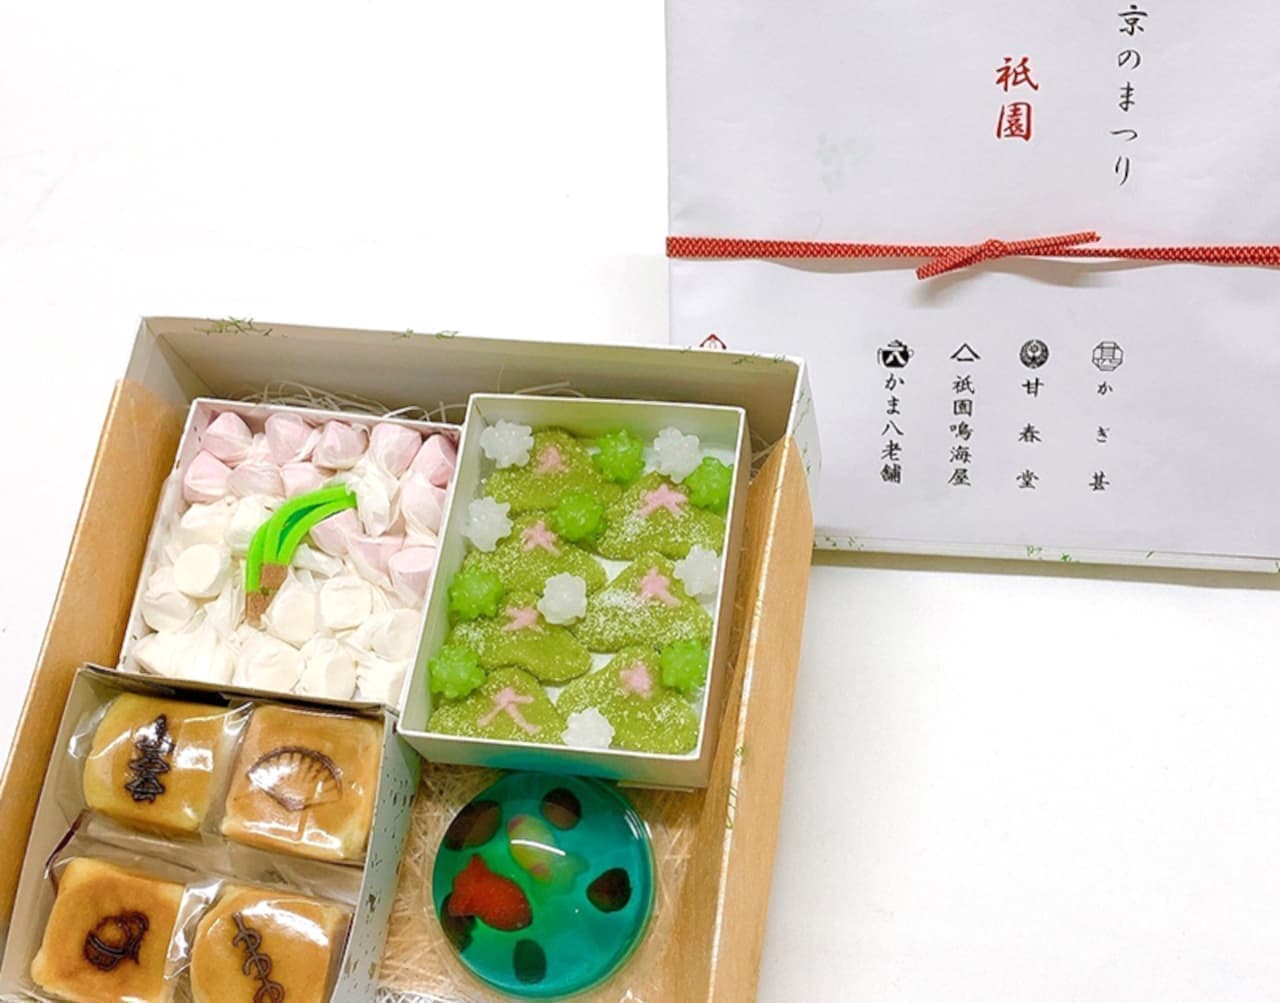 12社の和菓子詰め合わせ「京のまつり」